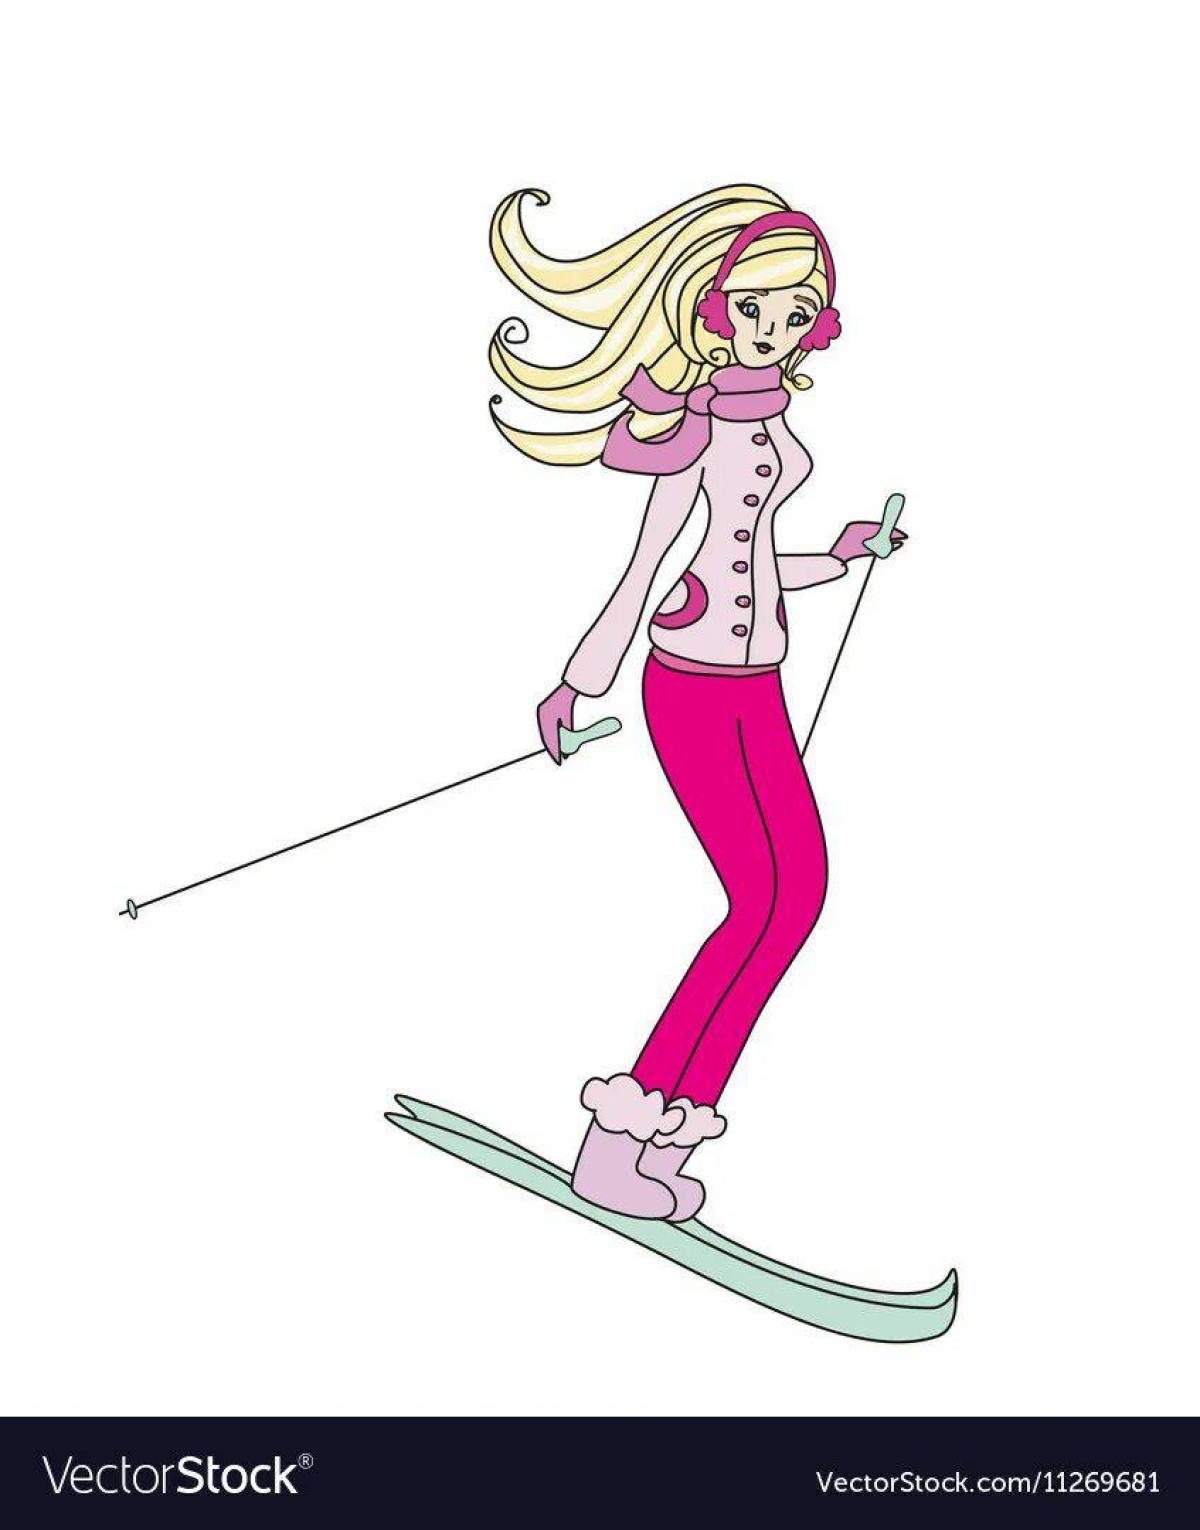 Девочка на лыжах #38